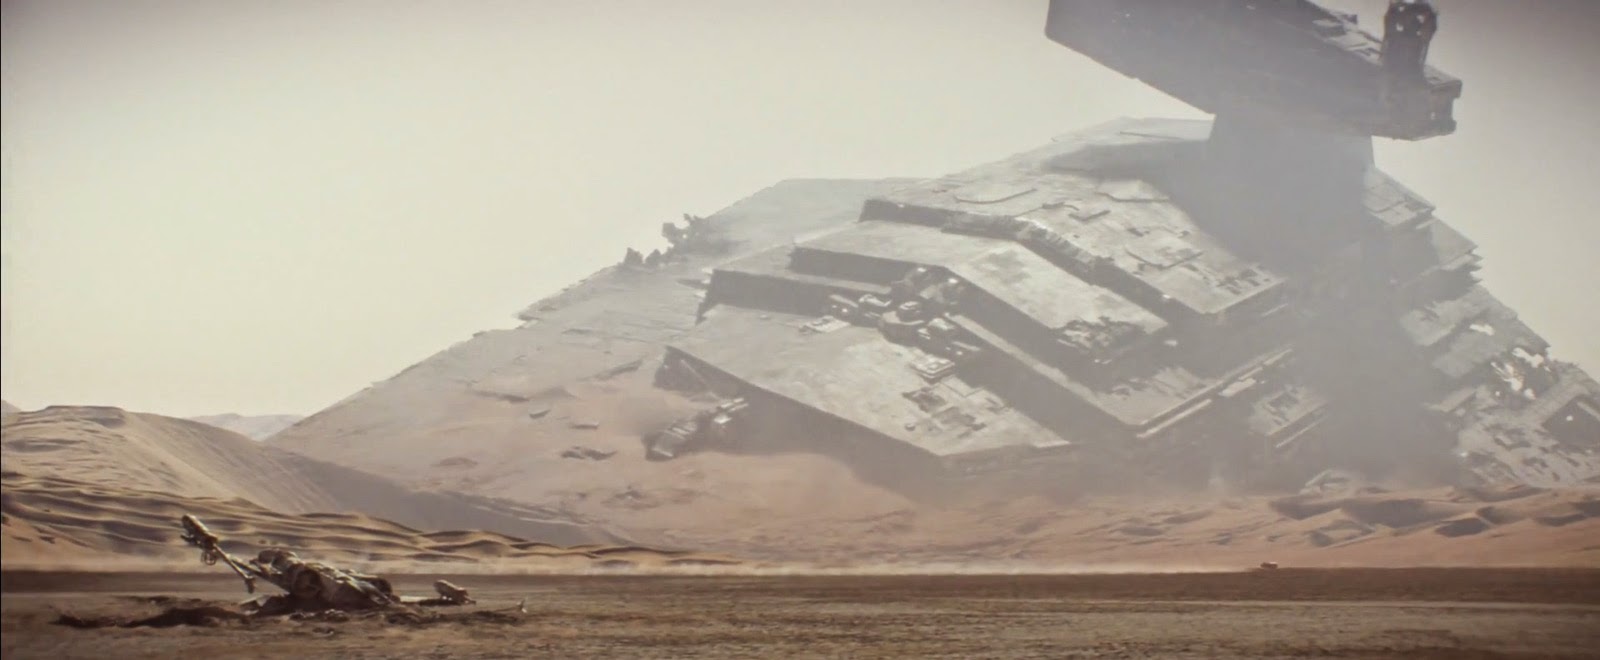 Star Wars Trailer Imperial Destroyer Crashed Jpg